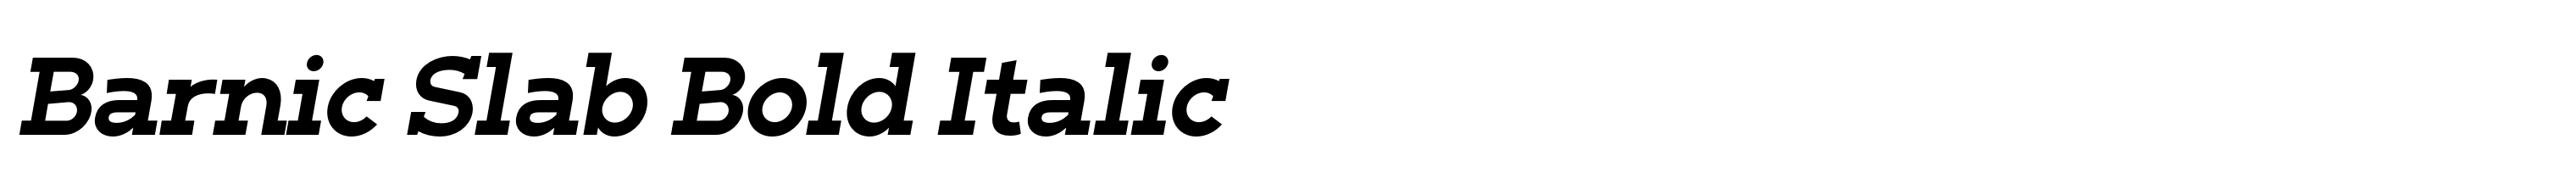 Barnic Slab Bold Italic